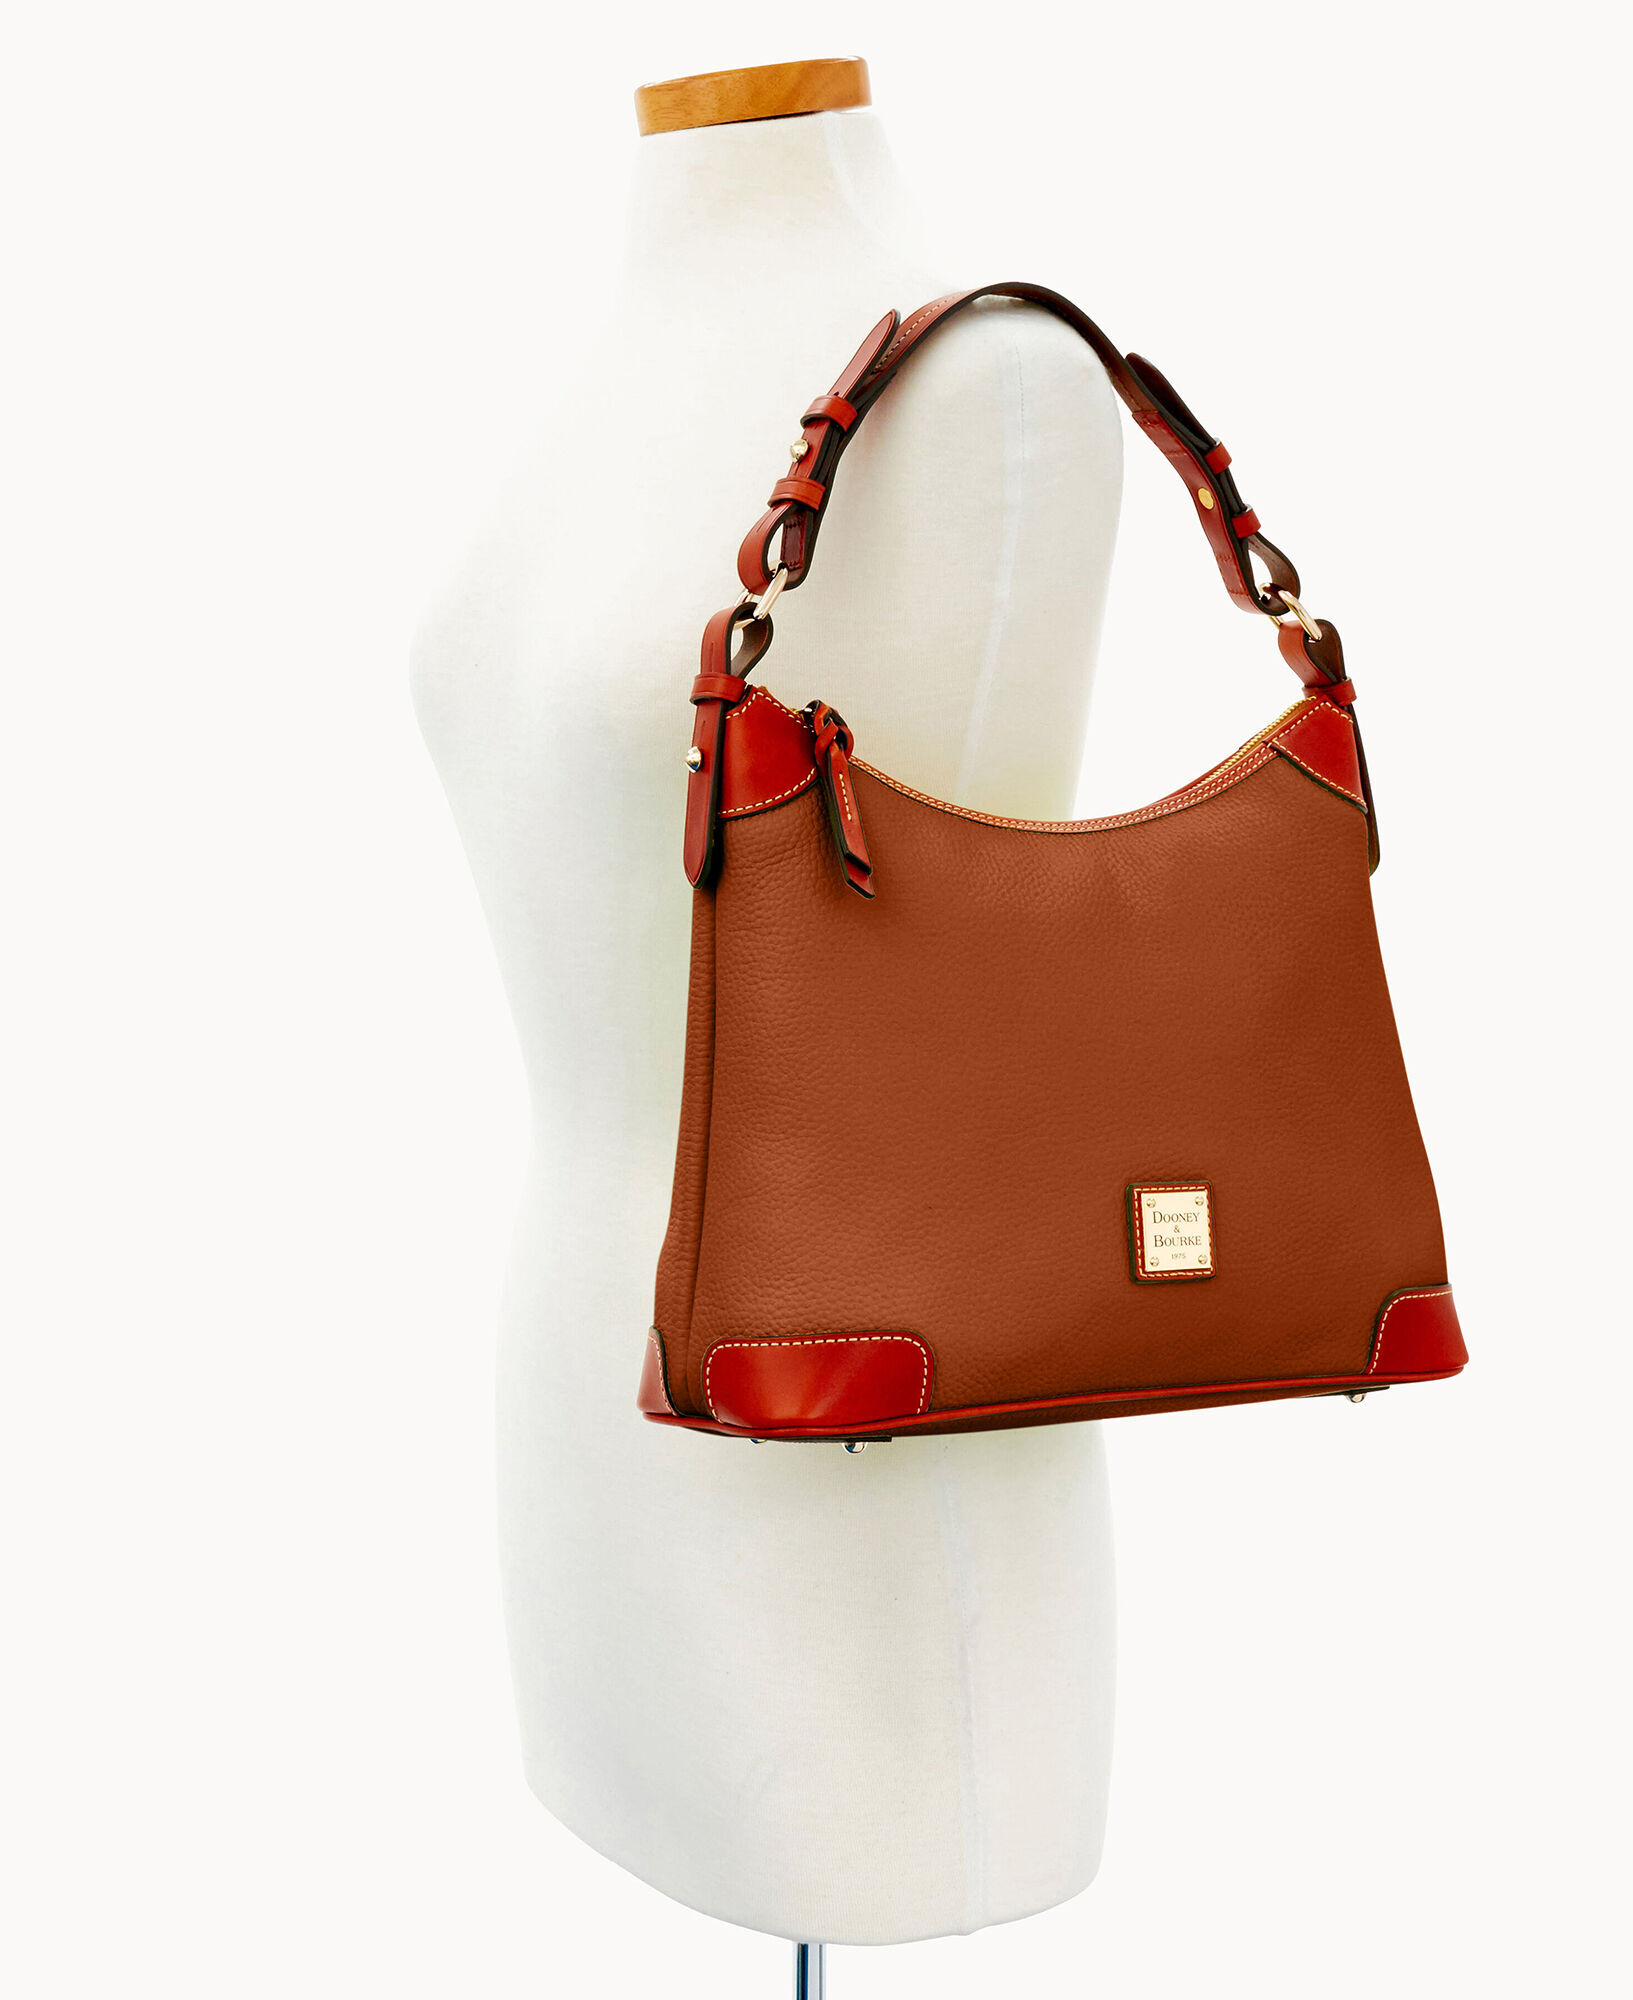 Hobo Handbag Luxury Brand, Hobo Crossbody Handbags